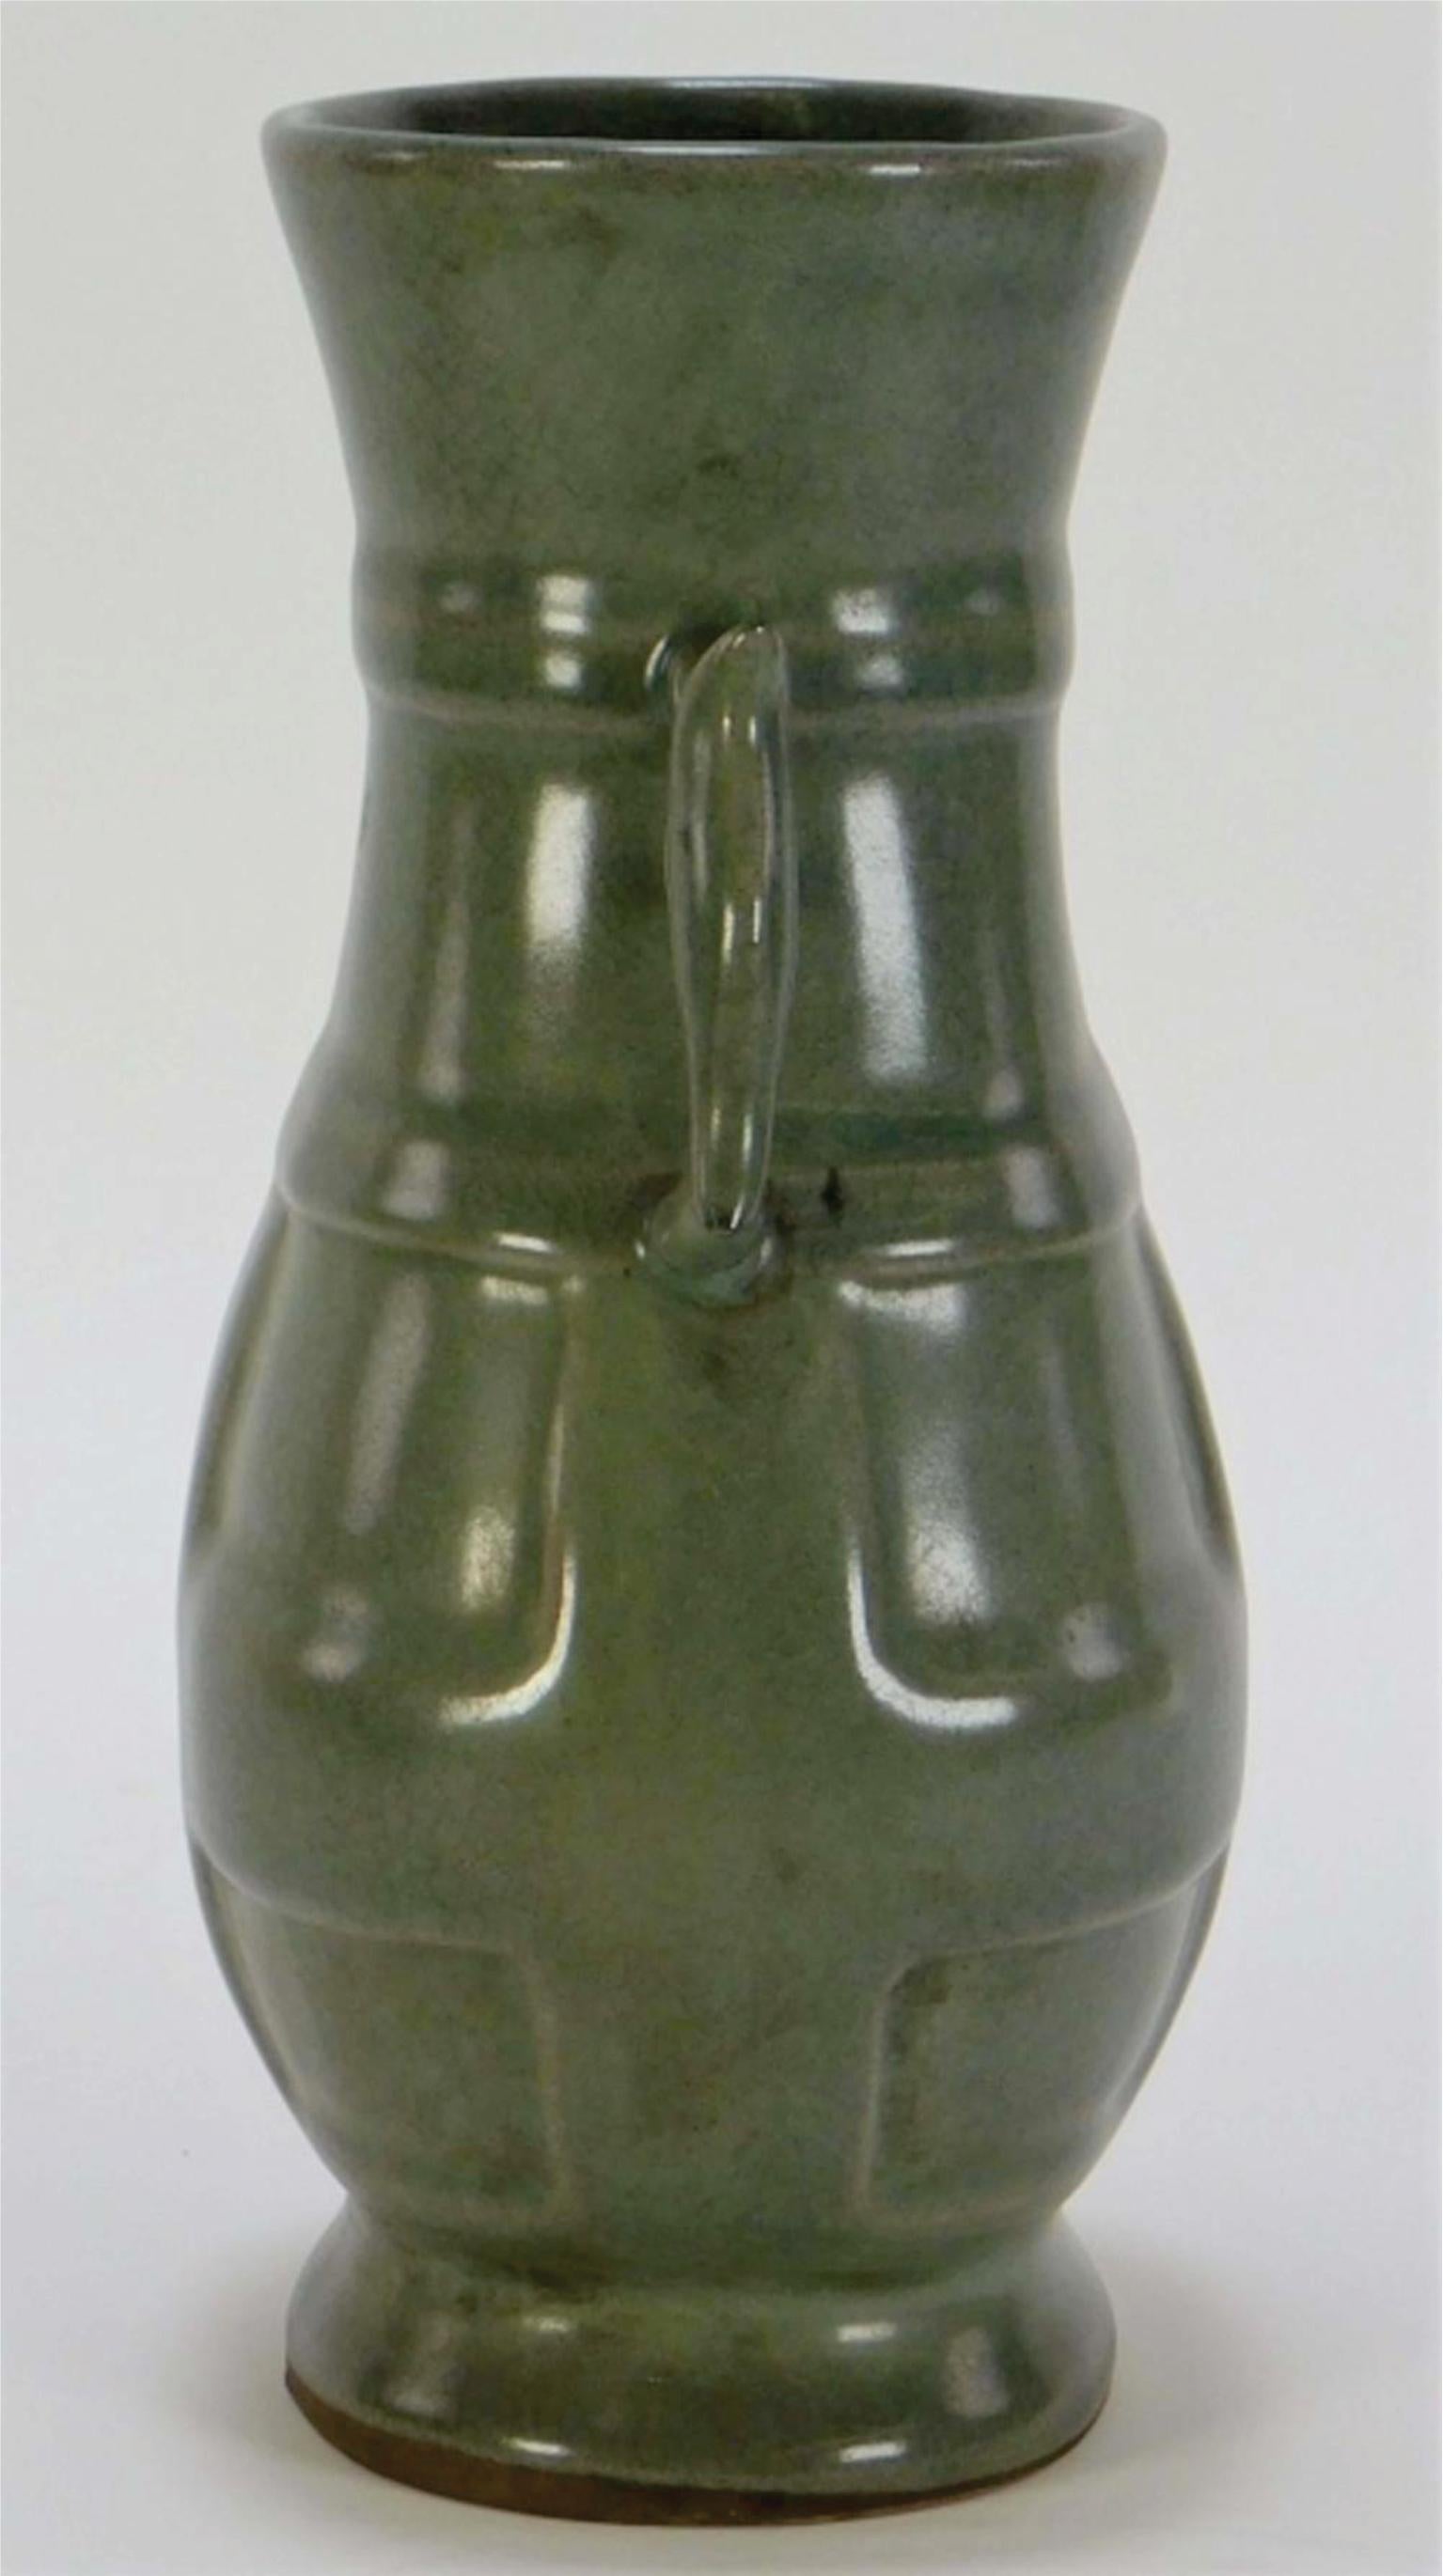 Chine, 19e siècle
Ce vase à bord évasé est orné d'un bandeau géométrique appliqué sur le corps et de poignées appliquées, le tout fini en céladon vert sauge.
Il a été émaillé à l'intérieur et à l'extérieur avec des motifs craquelés